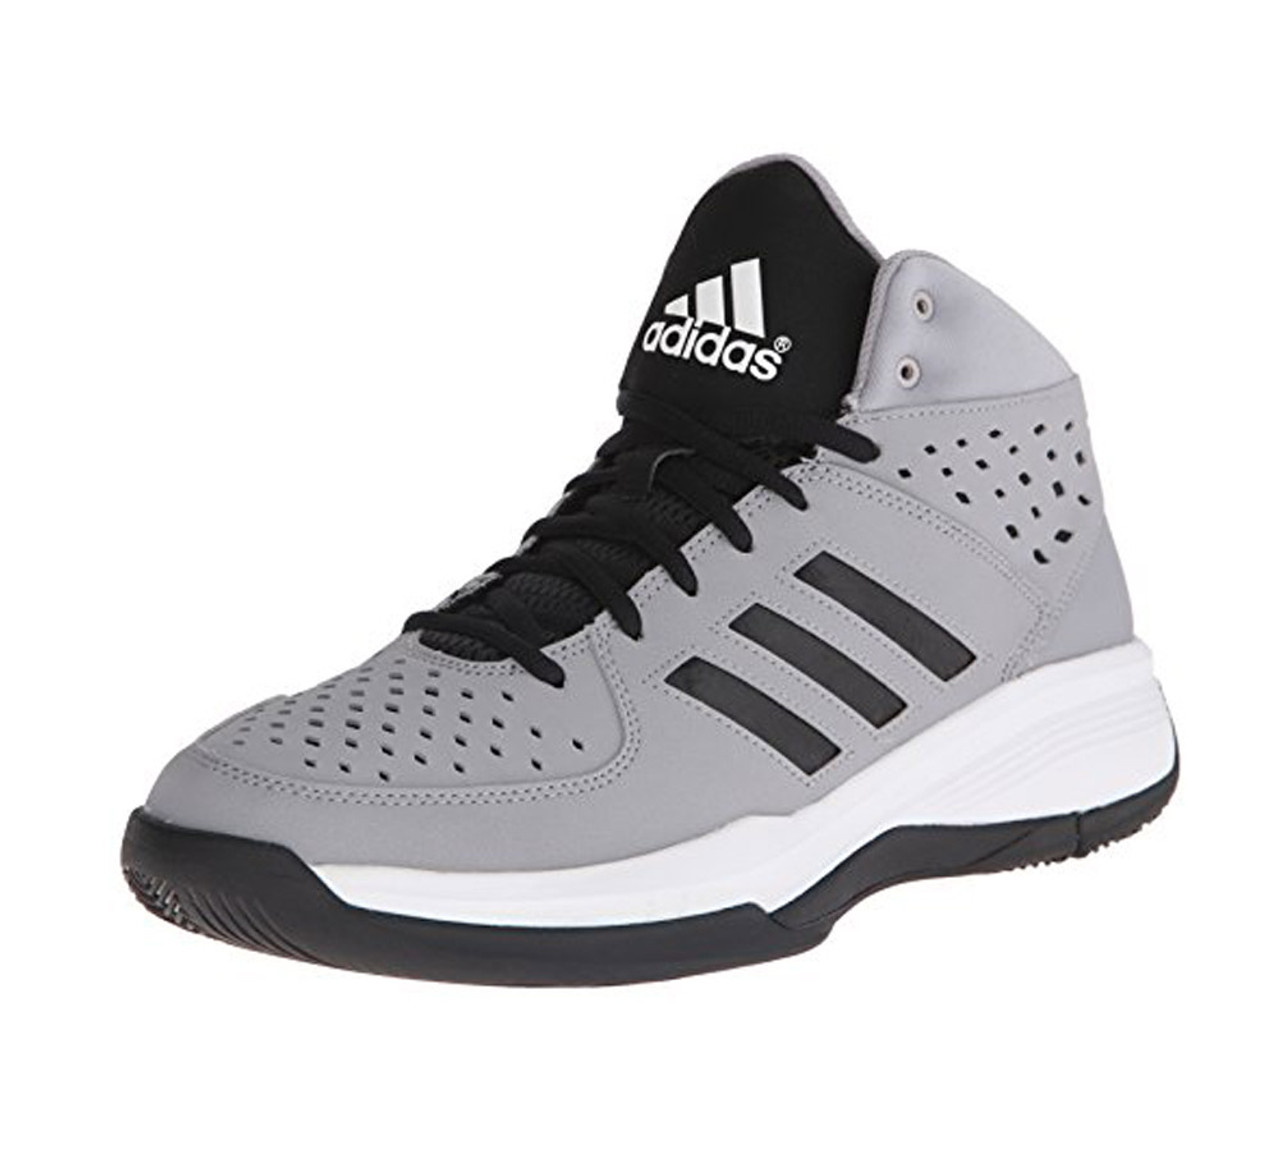 Adidas Men's Court Fury Basketball Shoe - Grey | Discount Adidas Men's  Athletic Shoes & More - Shoolu.com | Shoolu.com